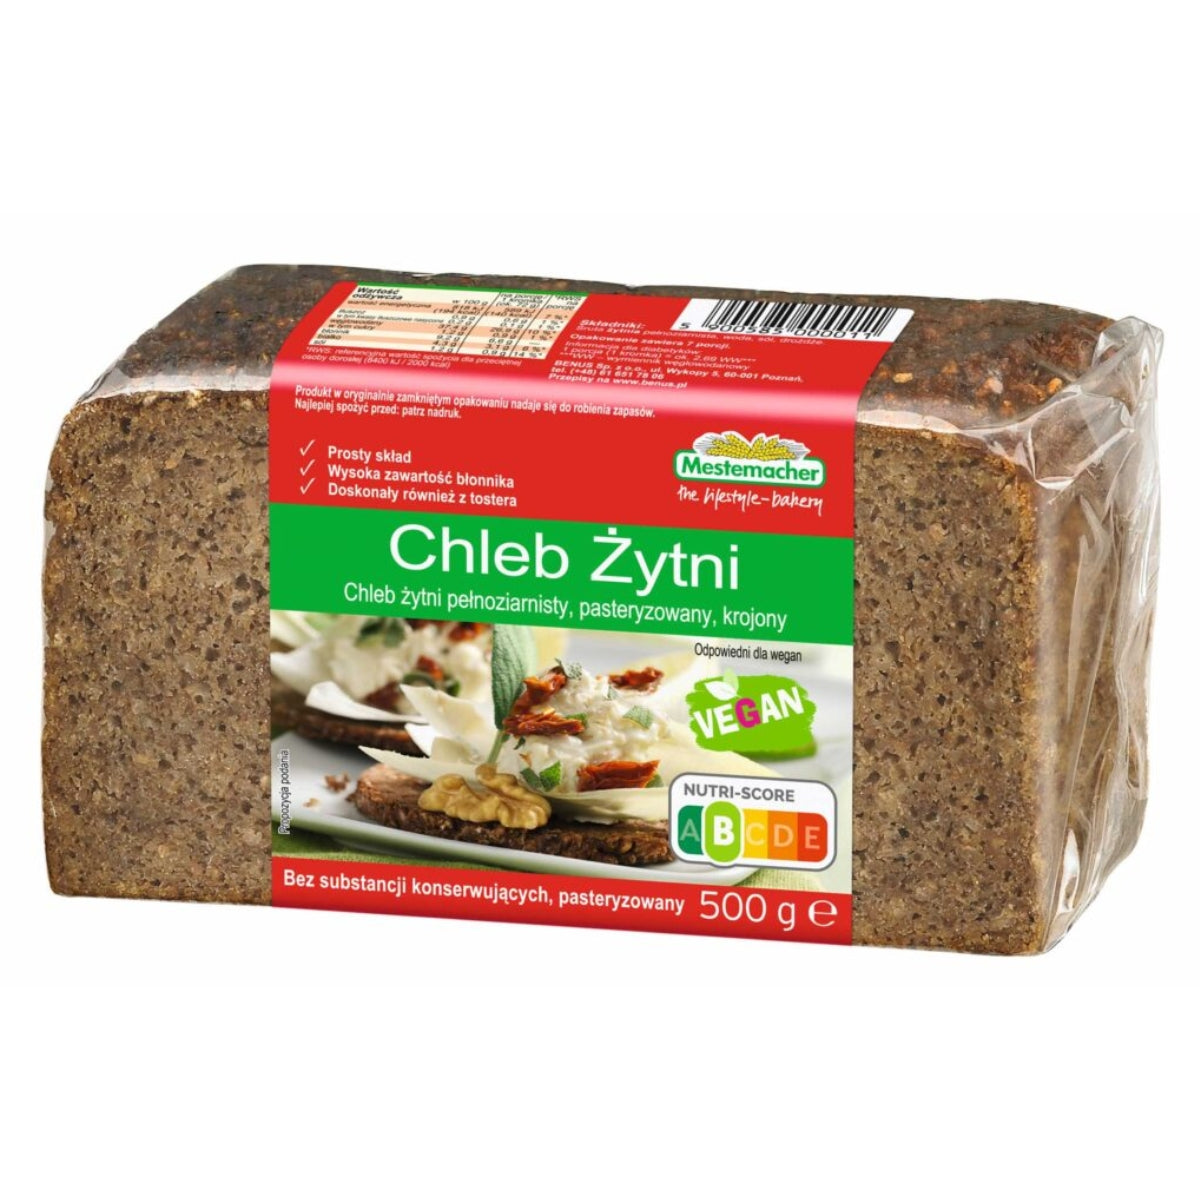 A loaf of Benus - Whole Grain Rye Bread (Chleb Zytni) - 500g with cheeb zynn on it.